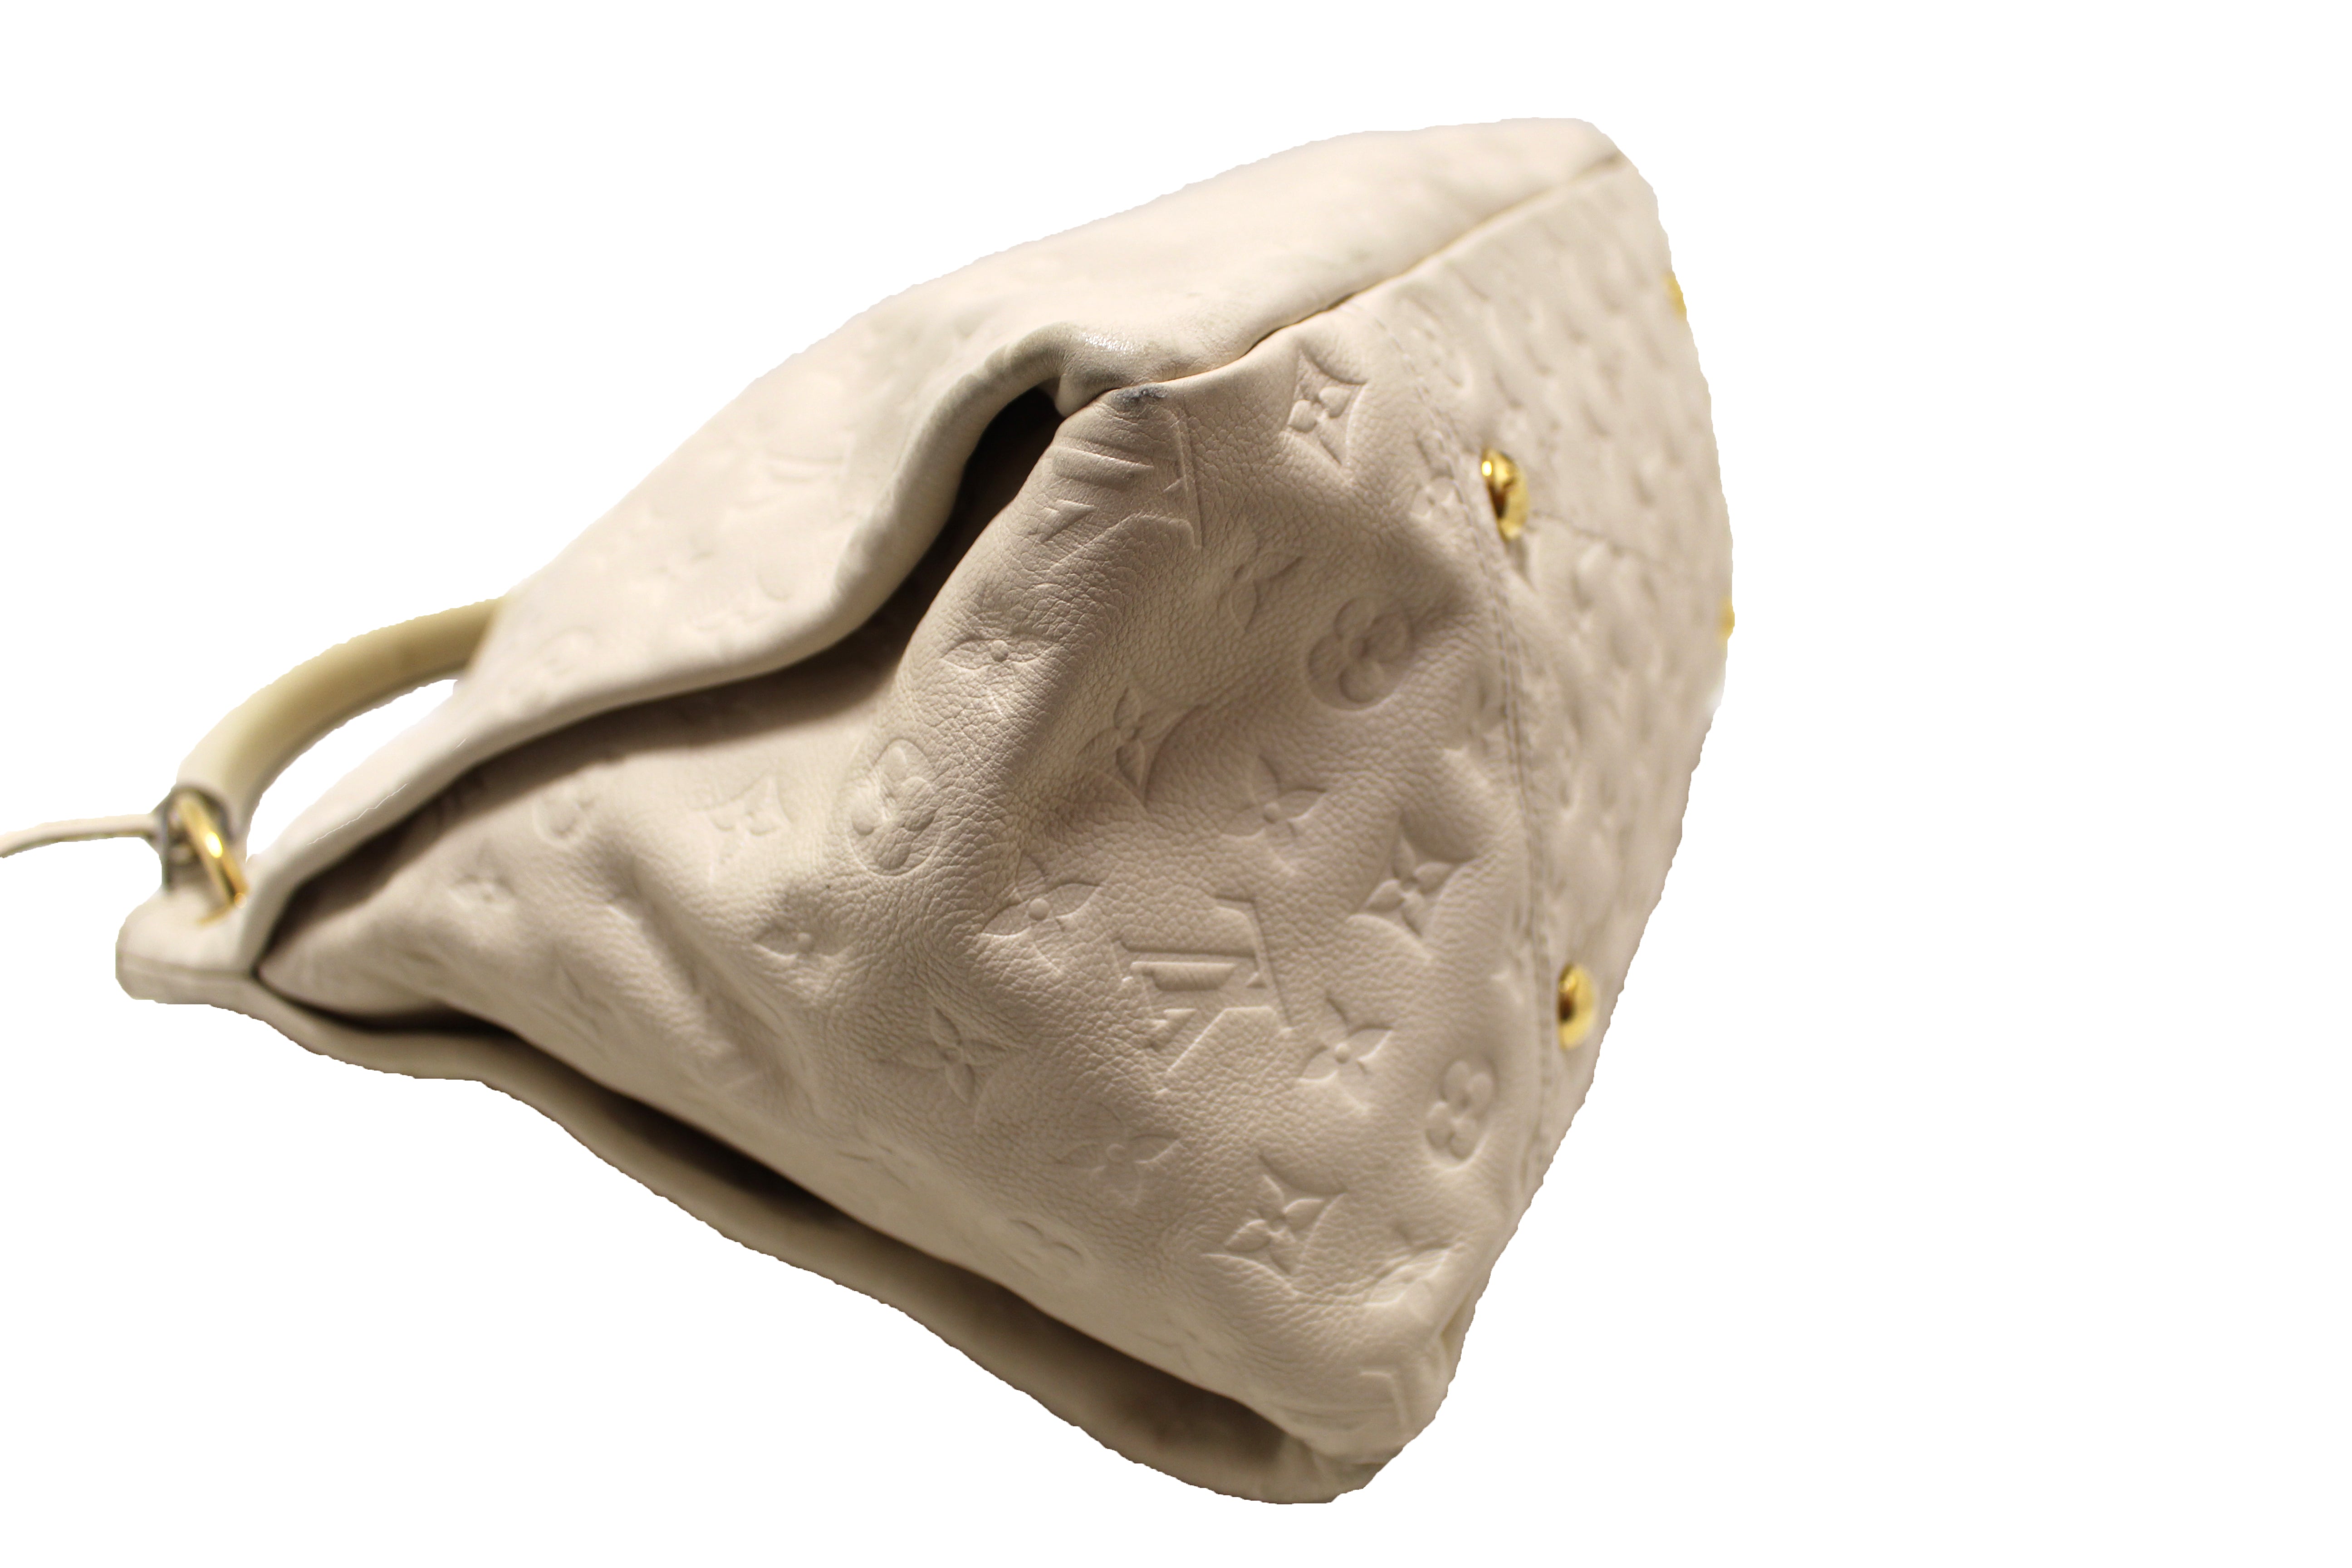 Authentic Louis Vuitton Beige Empreinte Leather Artsy MM Shoulder